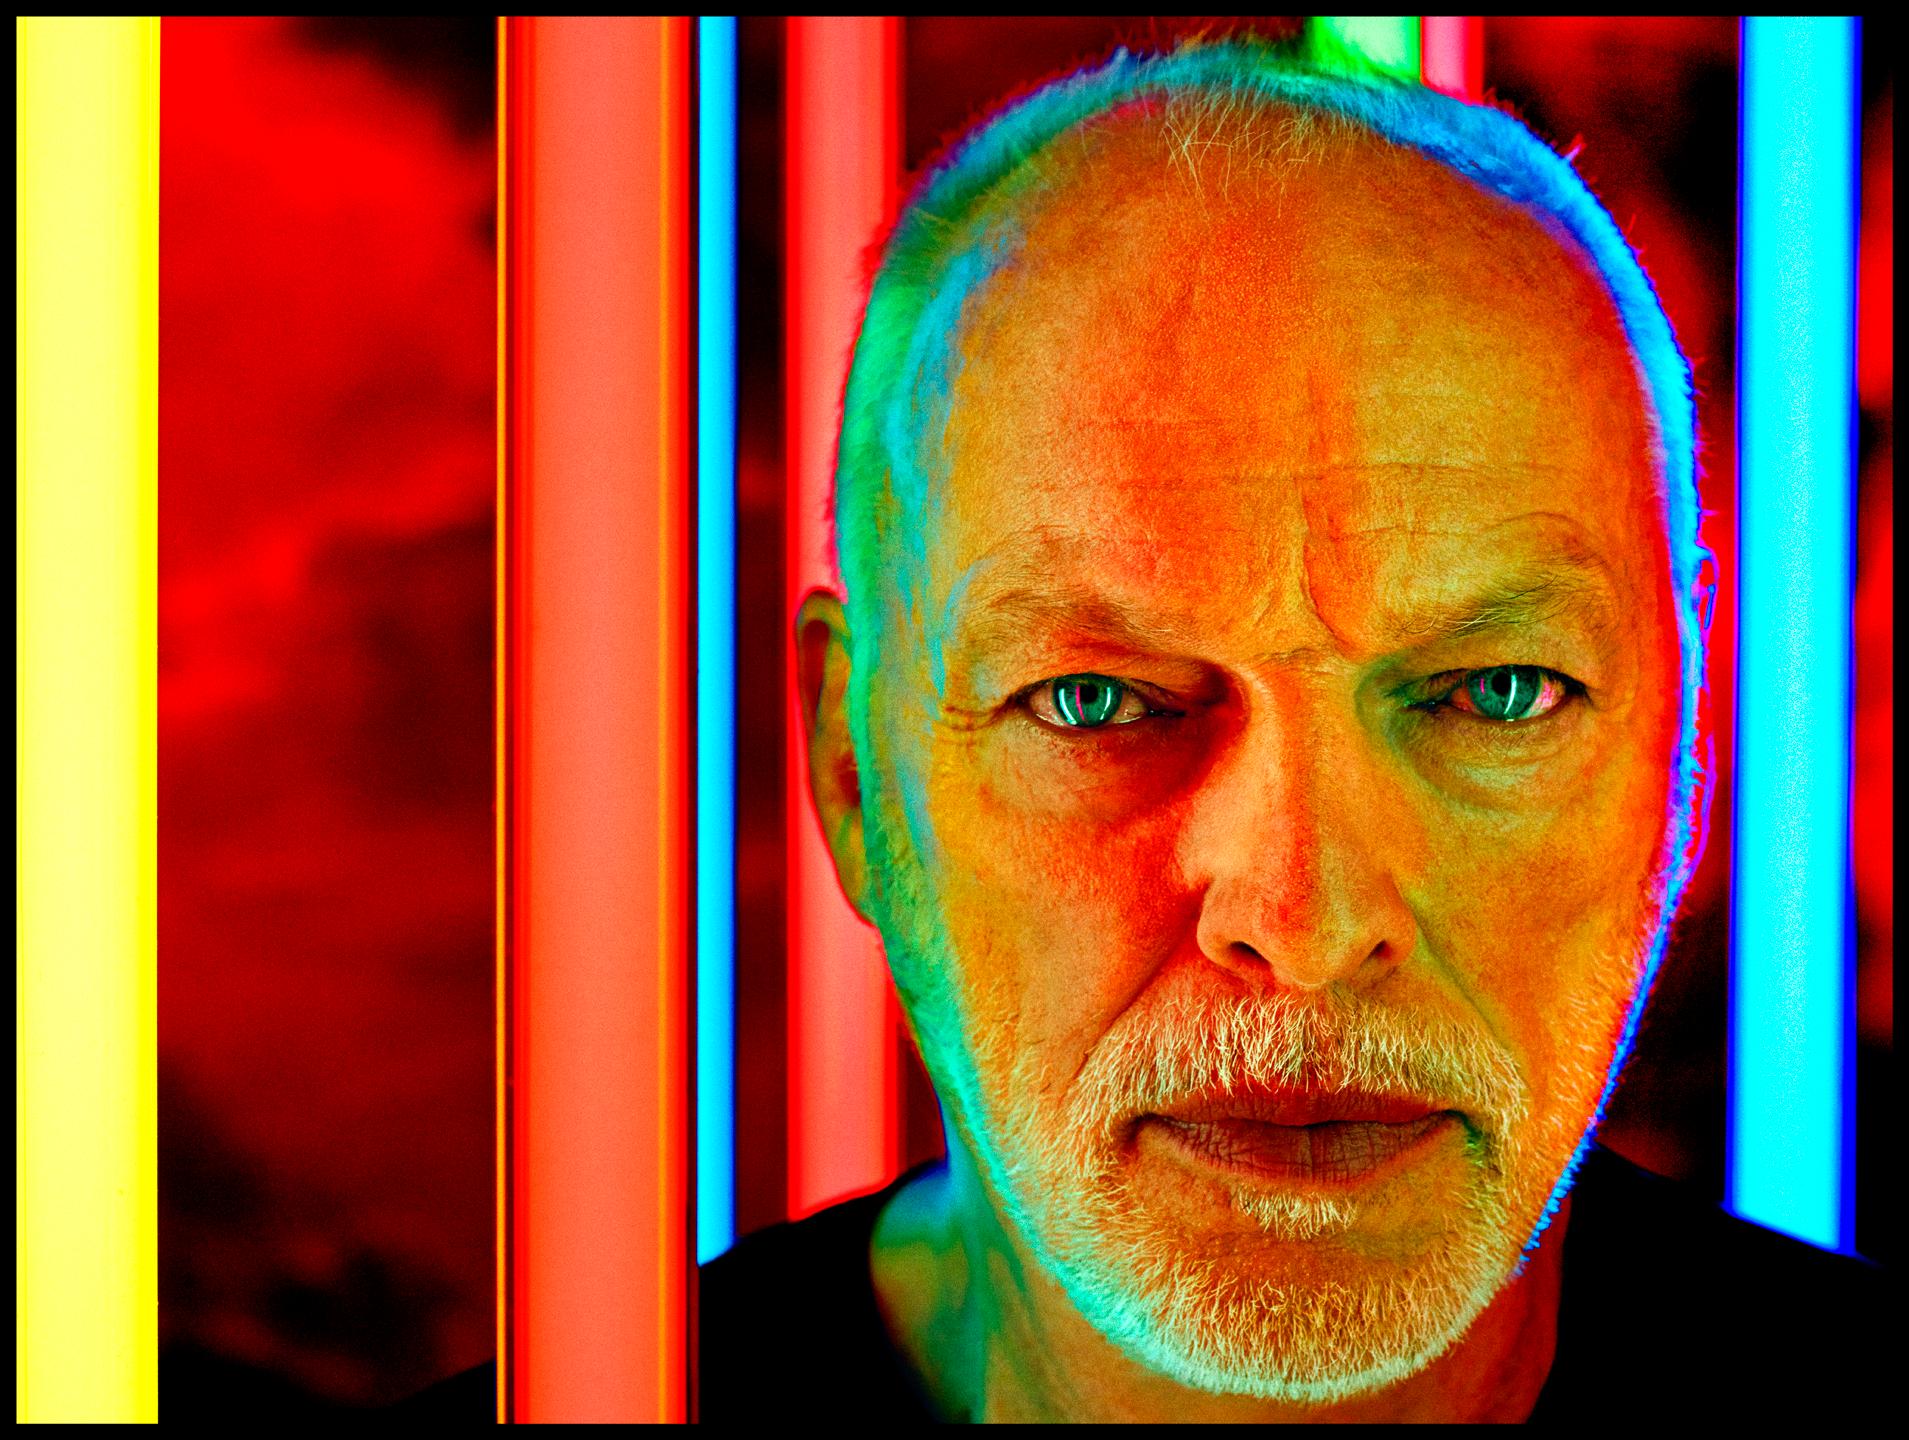 Porträt von David Gilmour von Pink Floyd 